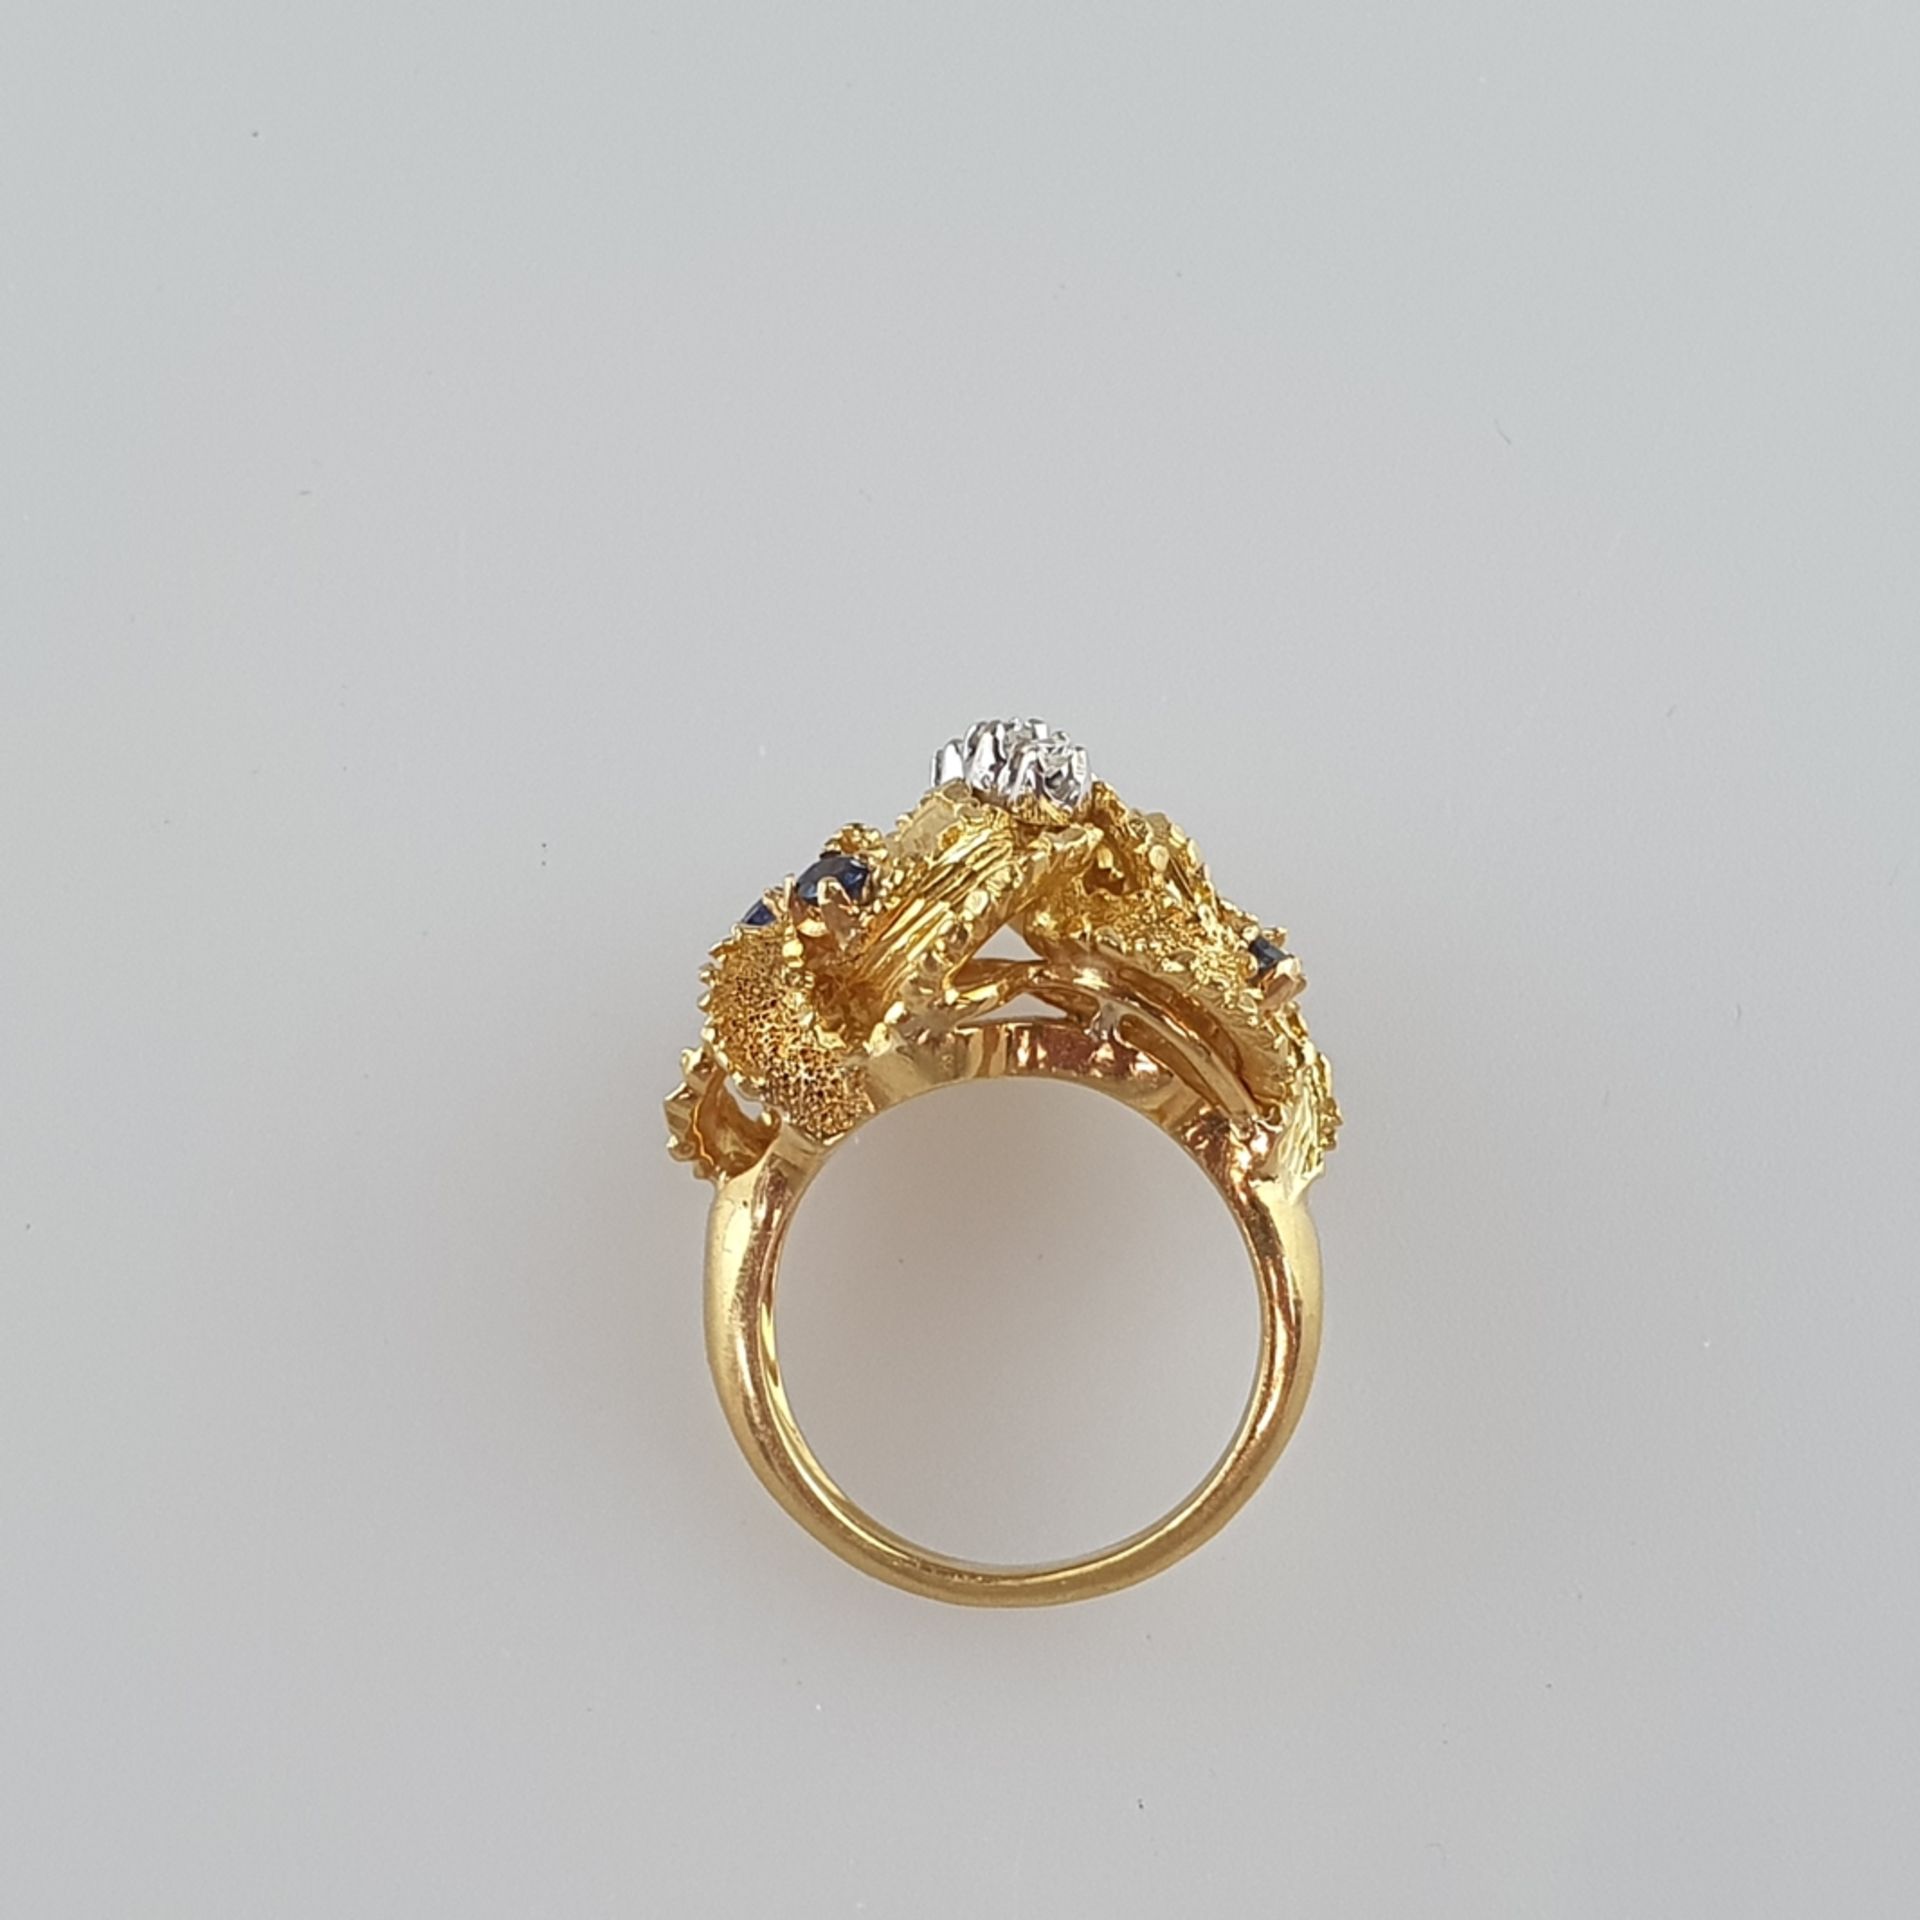 Imposanter Goldring mit Brillanten und Saphiren - Gelb-/Weißgold 750/000, im Ringkopf gestempelt, k - Bild 5 aus 5